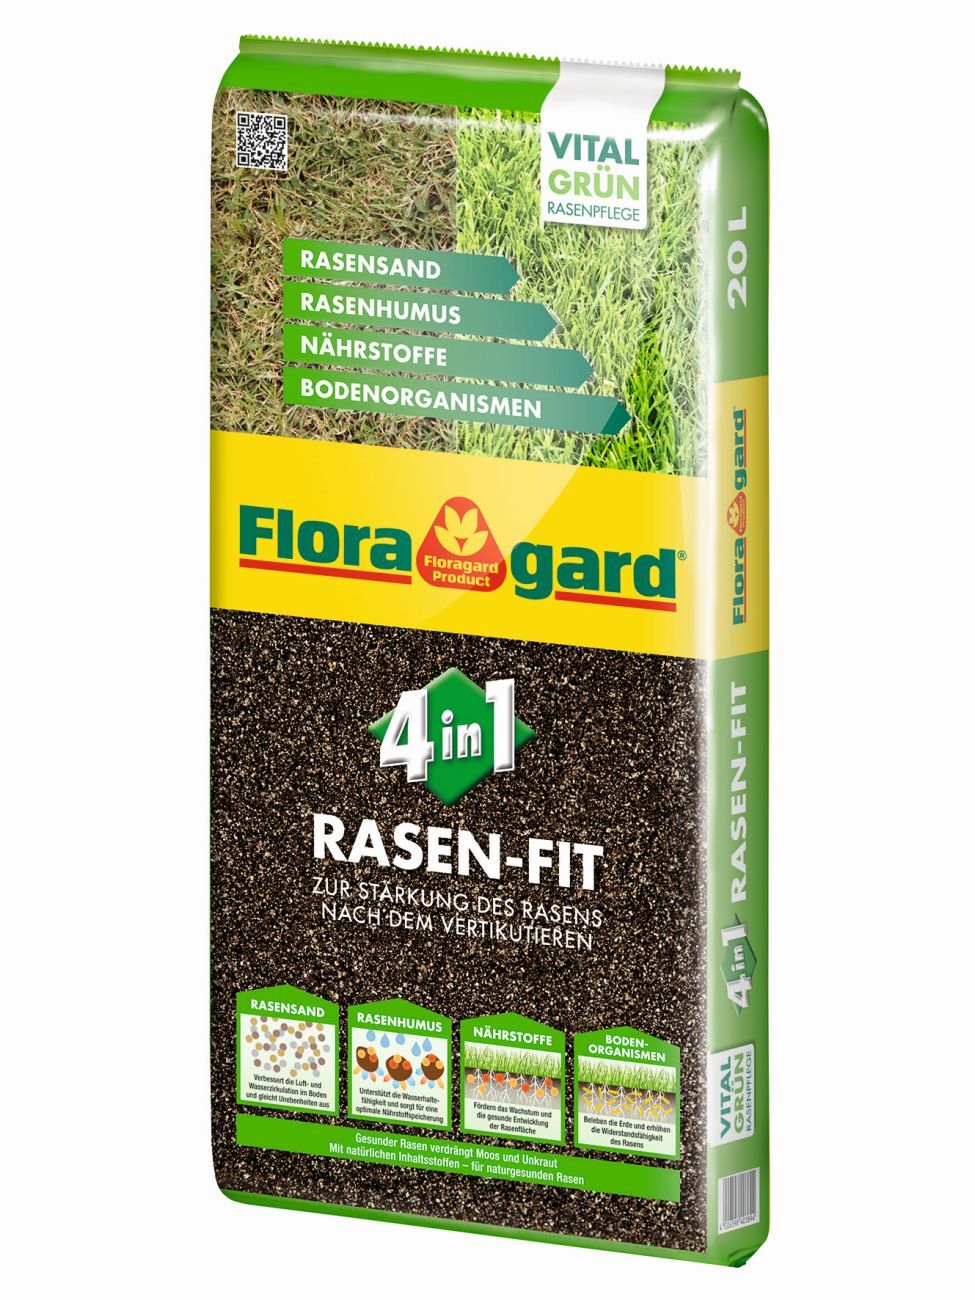 Floragard Rasen-Fit 4 in 1